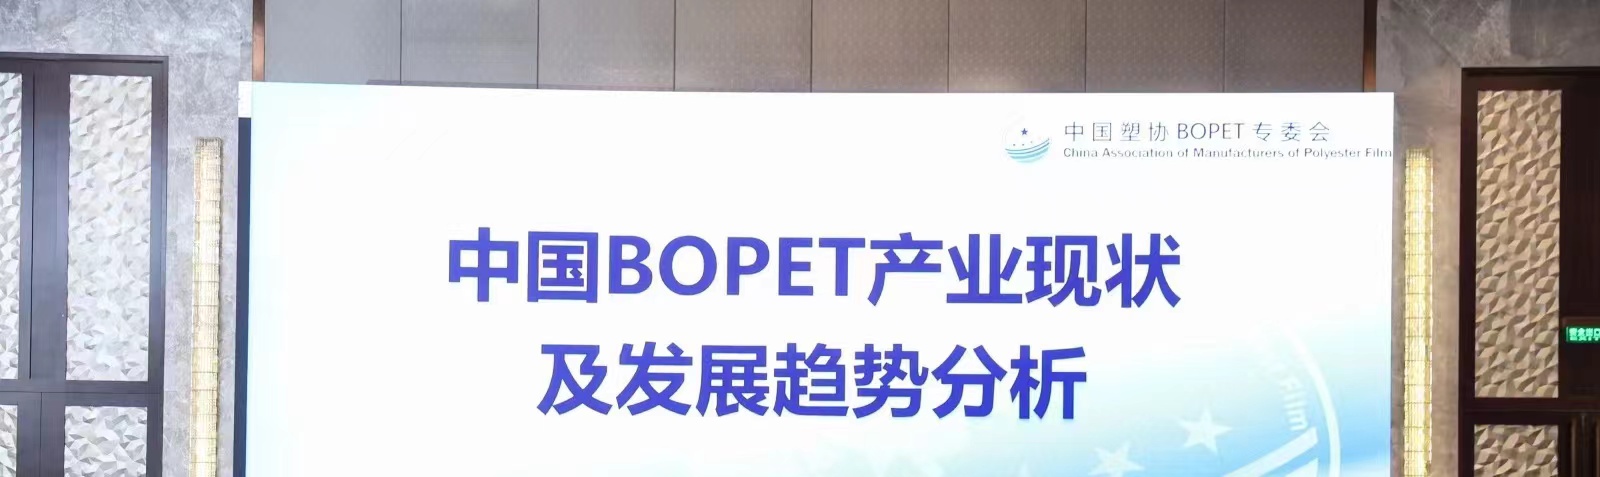 Konferens om den nuvarande situationen och utvecklingstrenden för Kinas BOPET-industri